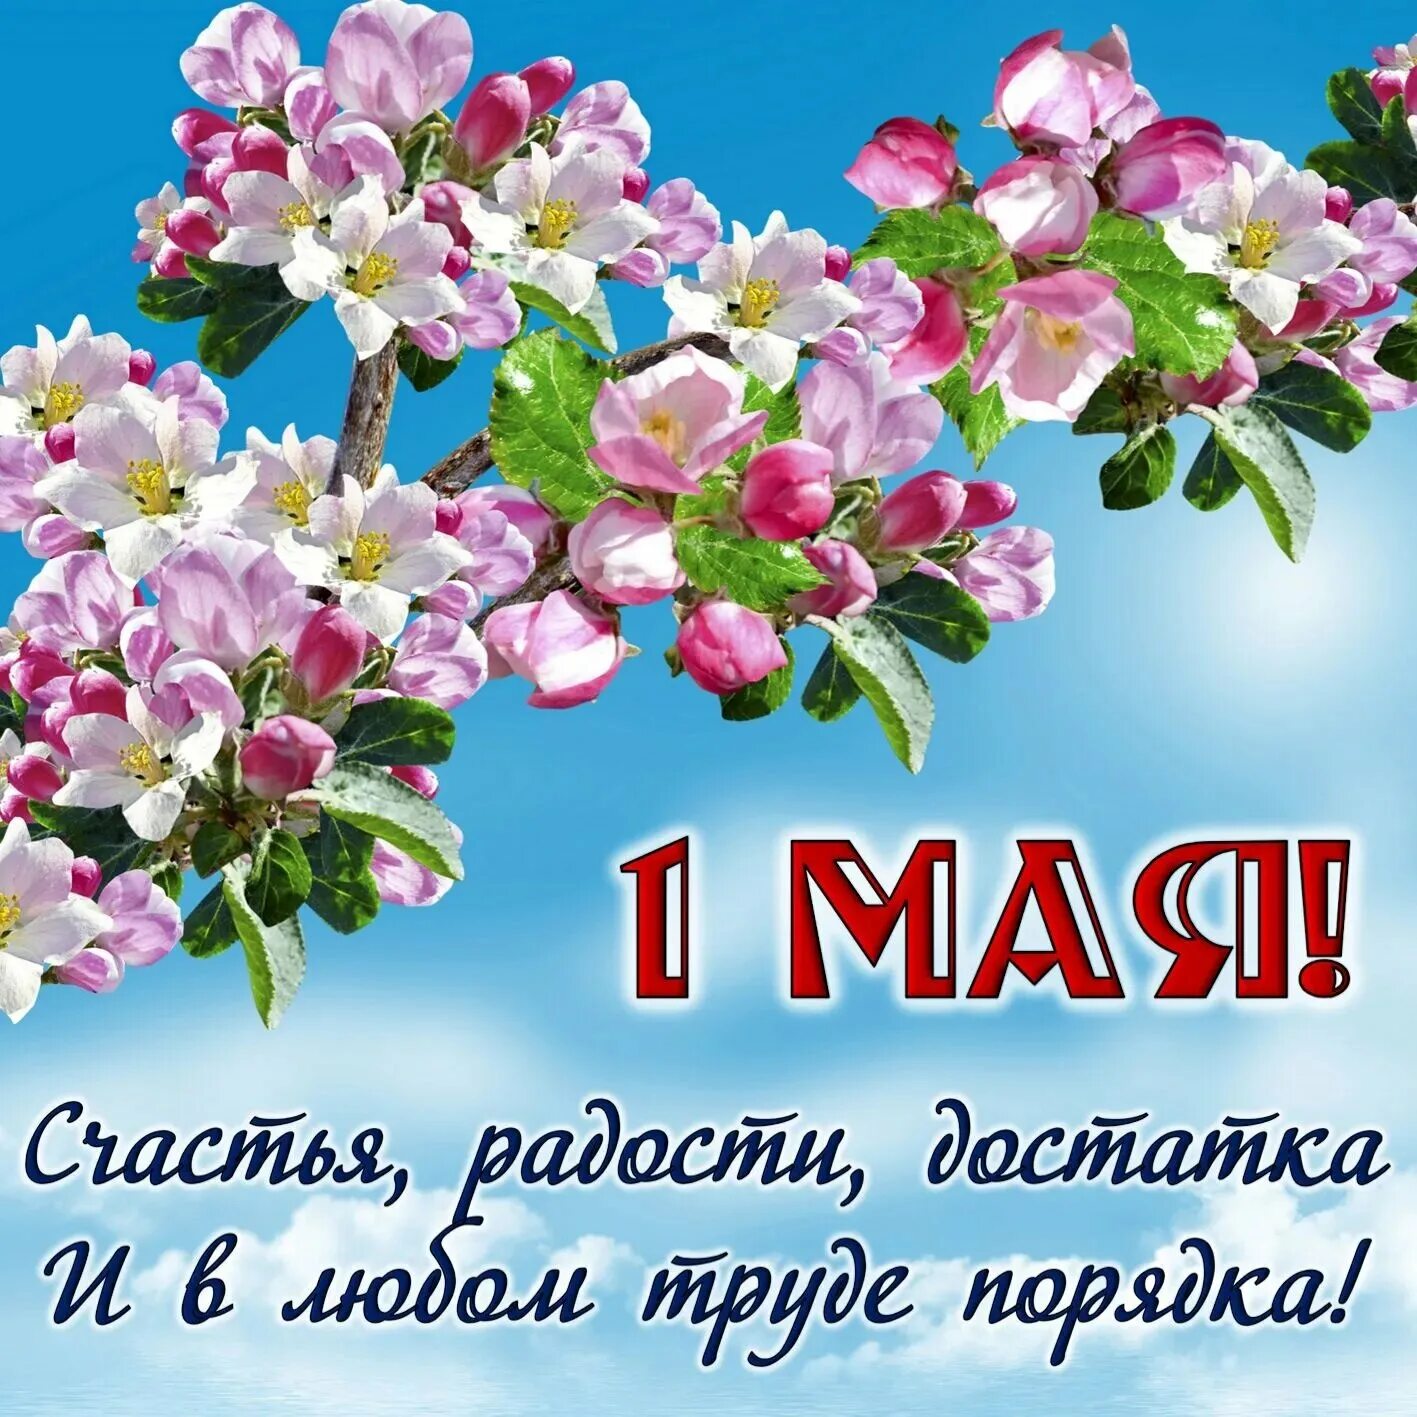 Май 1 новосибирск. Поздравление с 1 мая. Открытки с 1 мая. С праздником 1 мая поздравления. С праздником весны и ипуда.